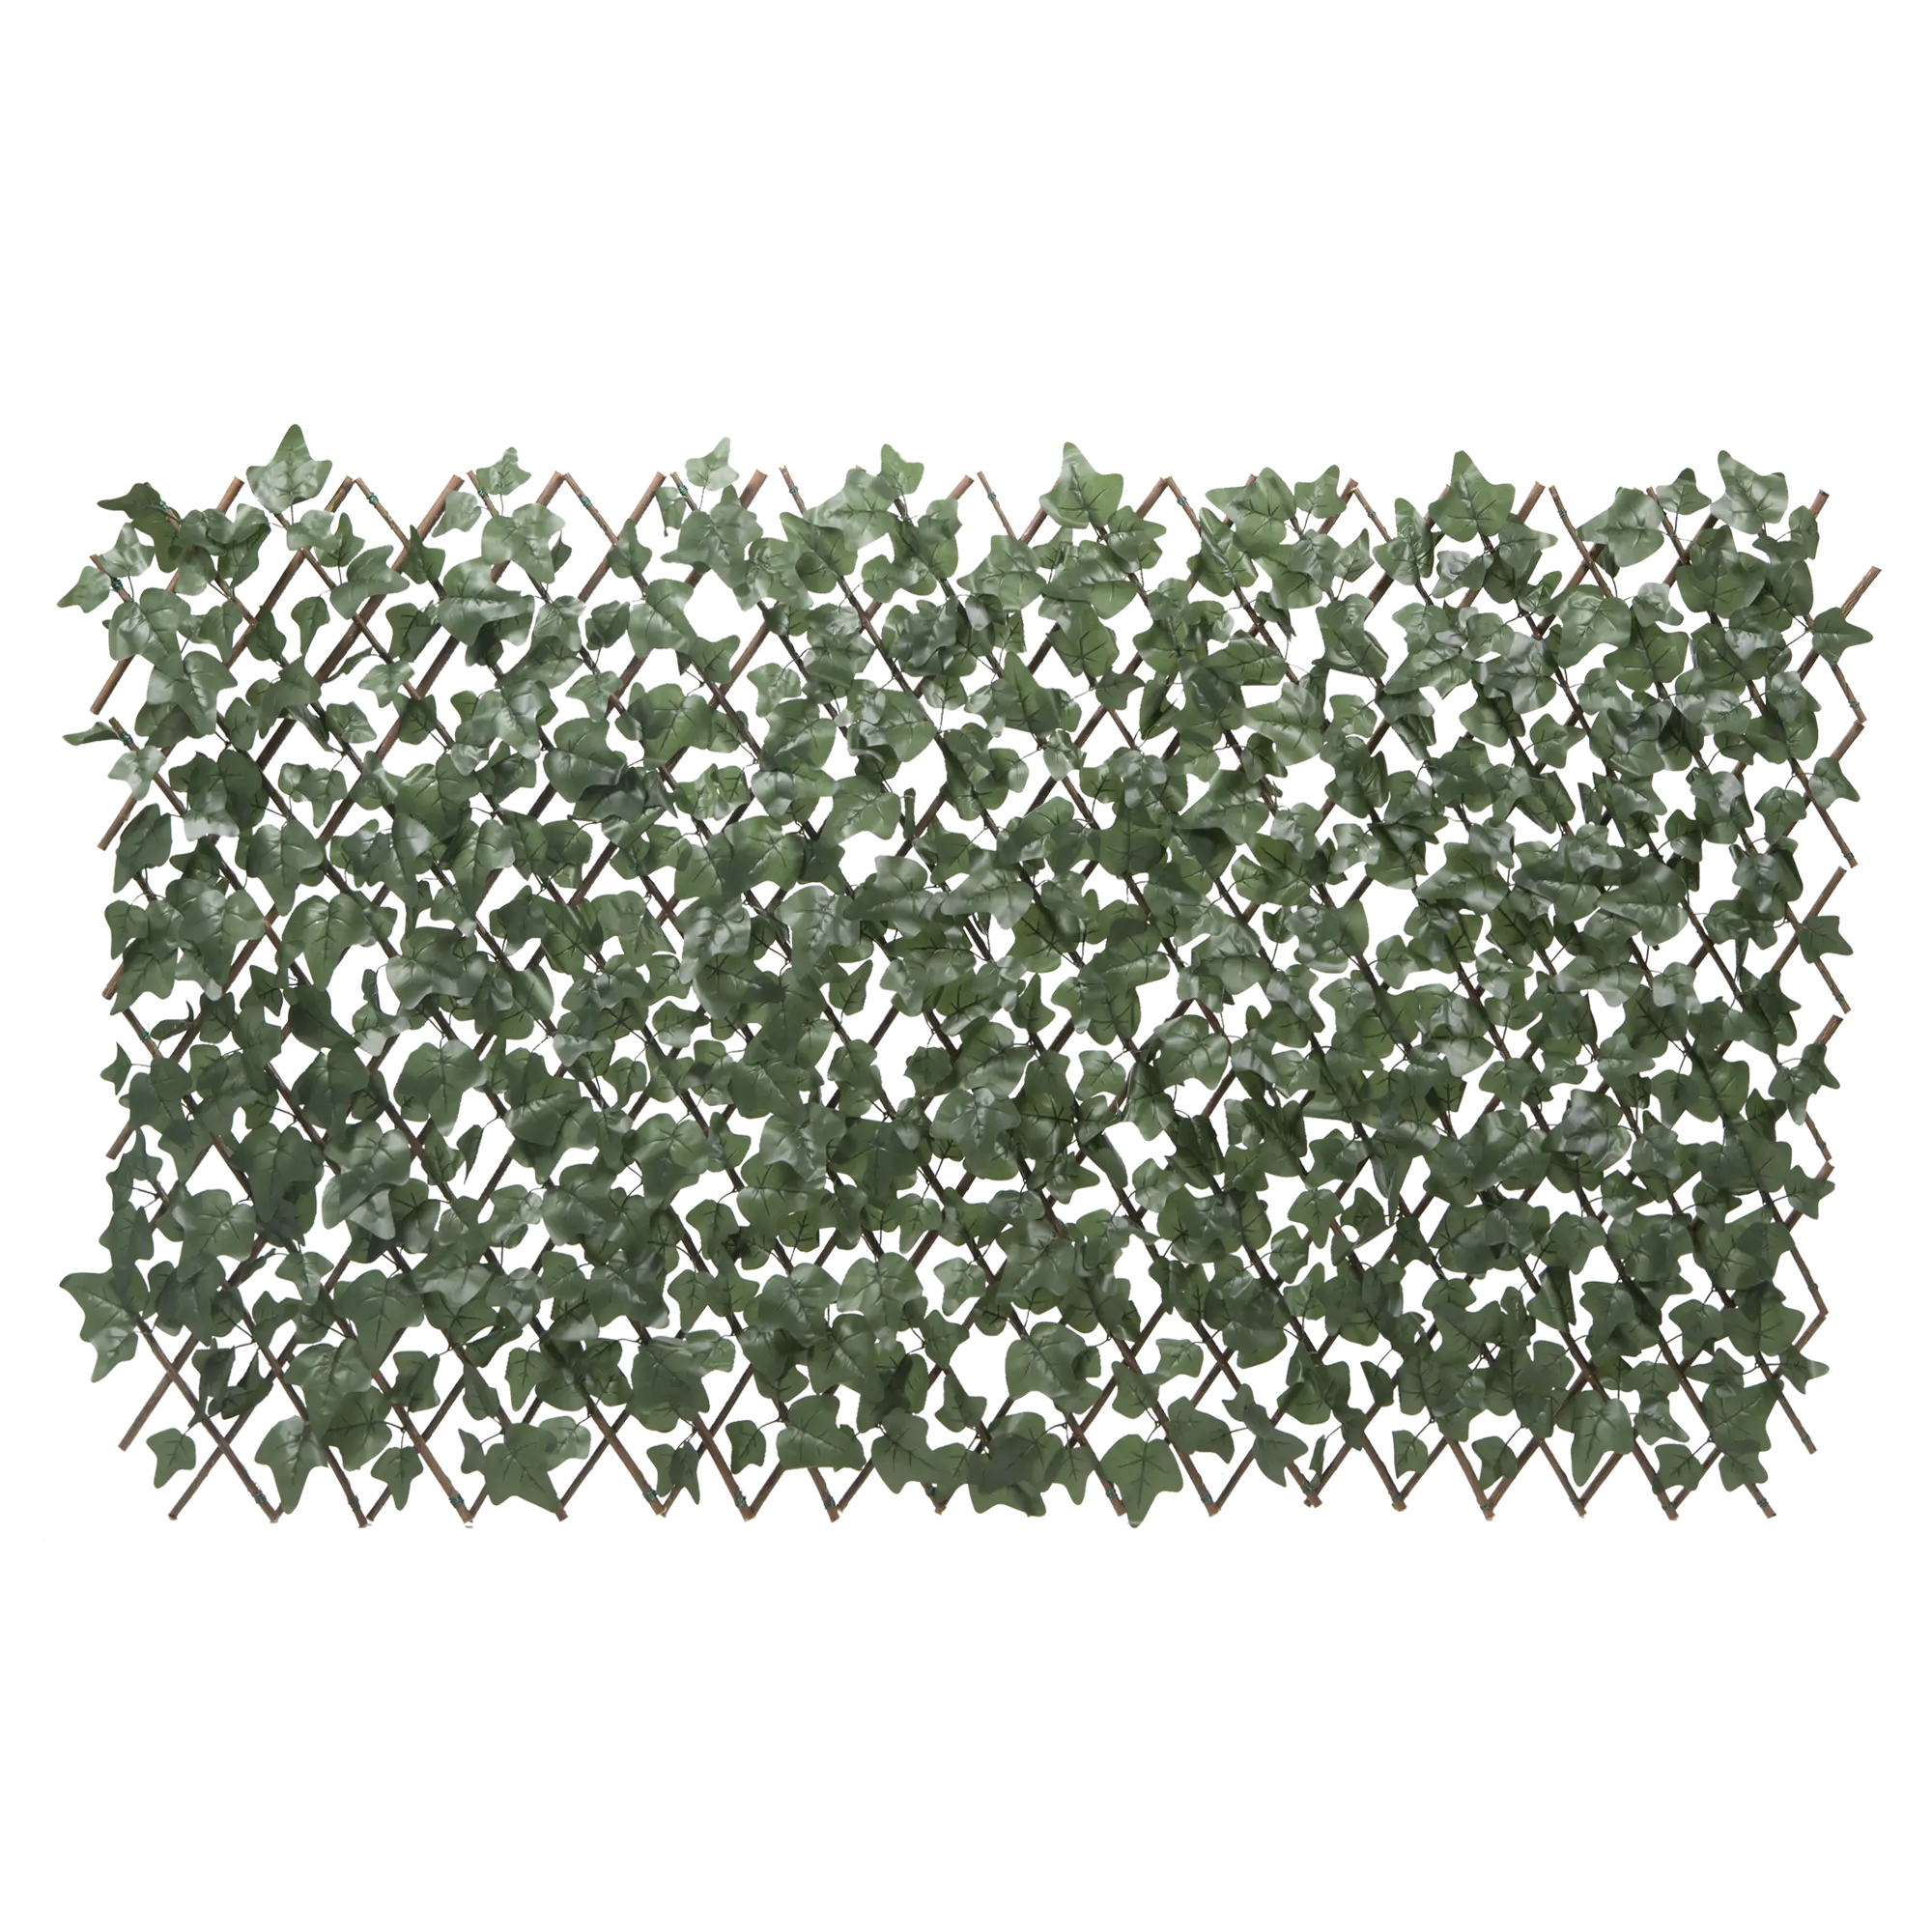 Celosía extensible de rattan en hojas de hiedra 1 x 2 m